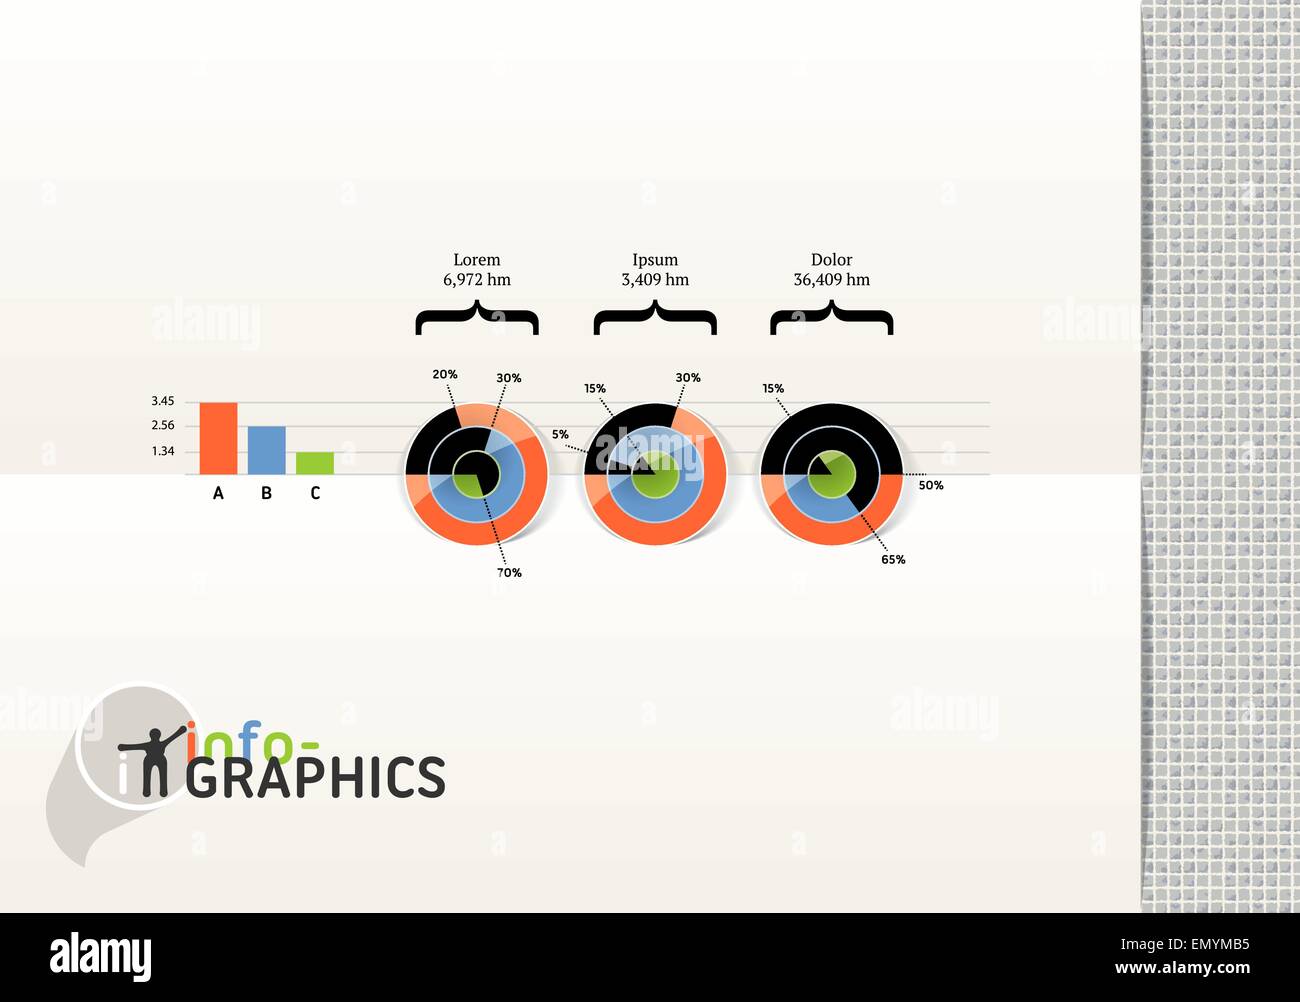 Satz von Elementen der Infografik. Visuelle statistische Informationen. Vektor EPS 10 Folien verwendet. Stock Vektor